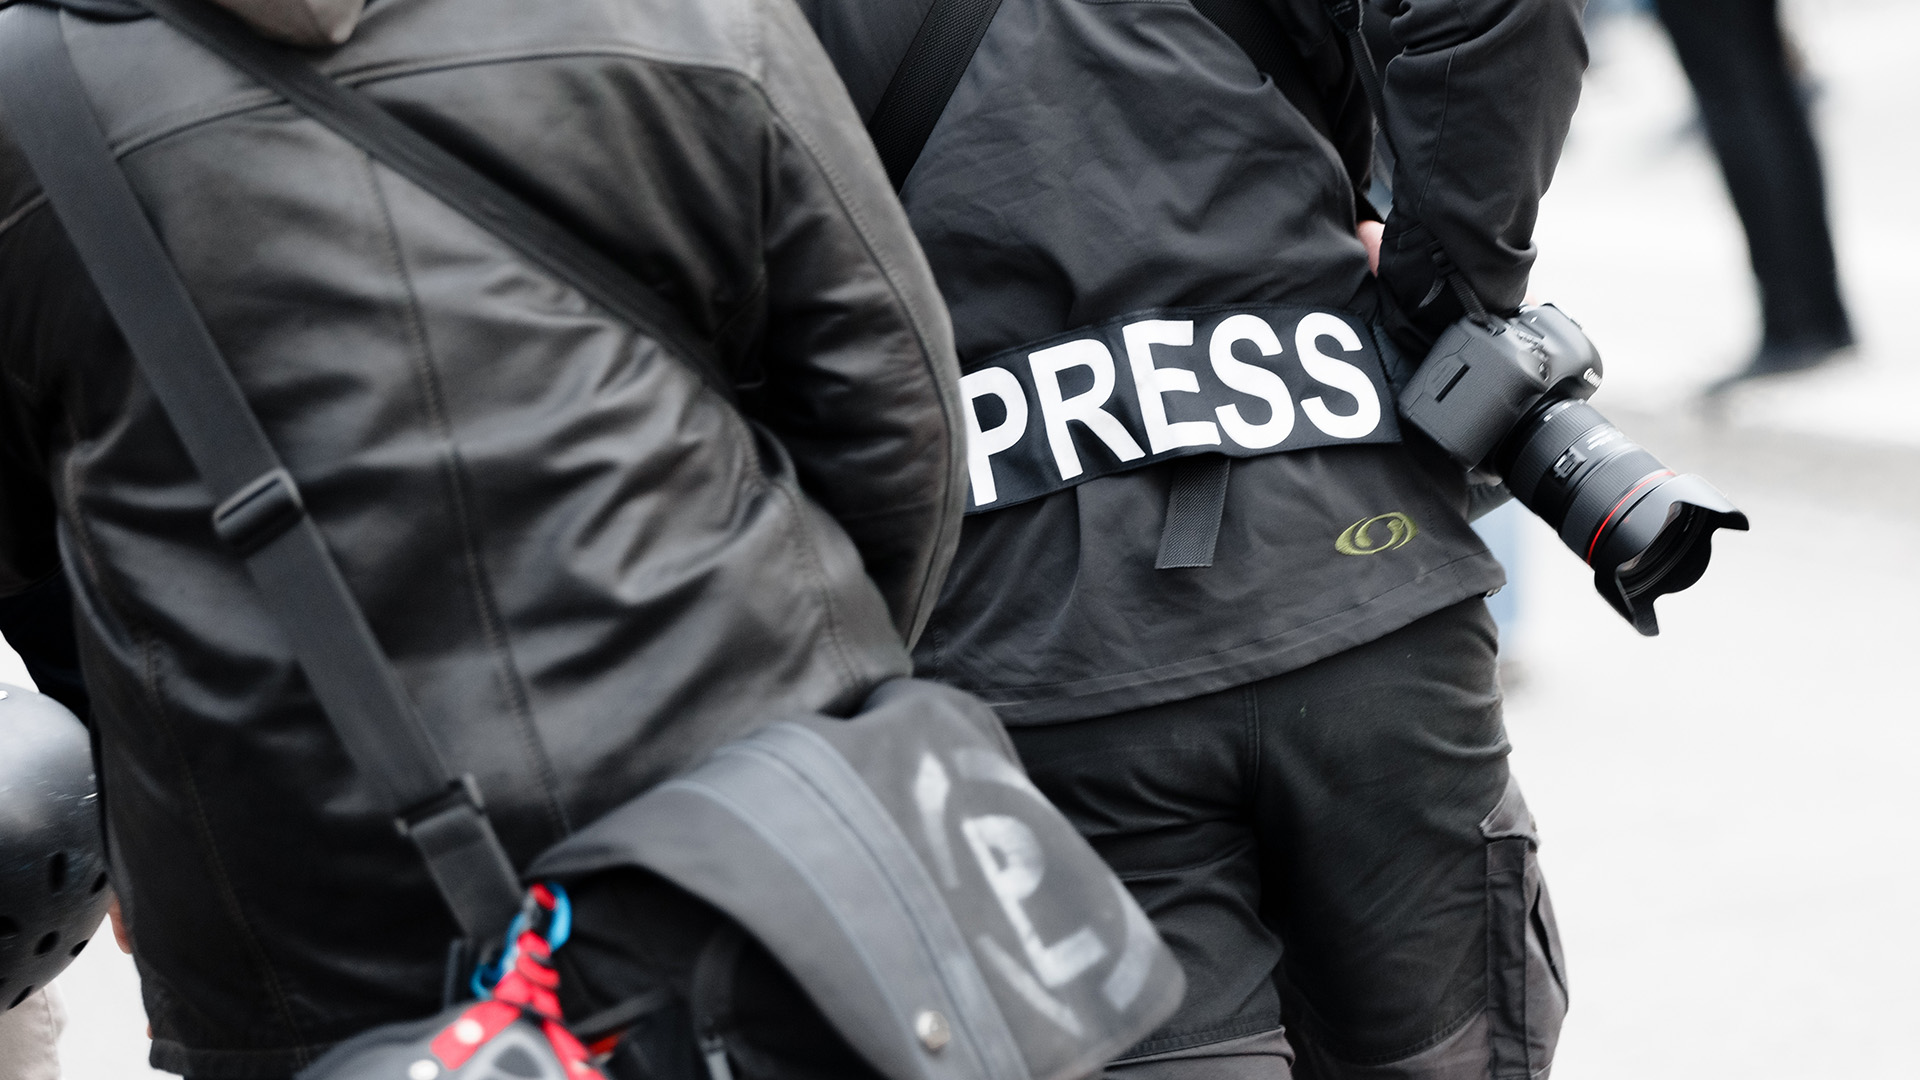 Ein Fotoreporter trägt auf einer Demonstration einen Aufnäher mit dem Text "PRESS". (Archivbild: 01.05.2017) | picture alliance/dpa